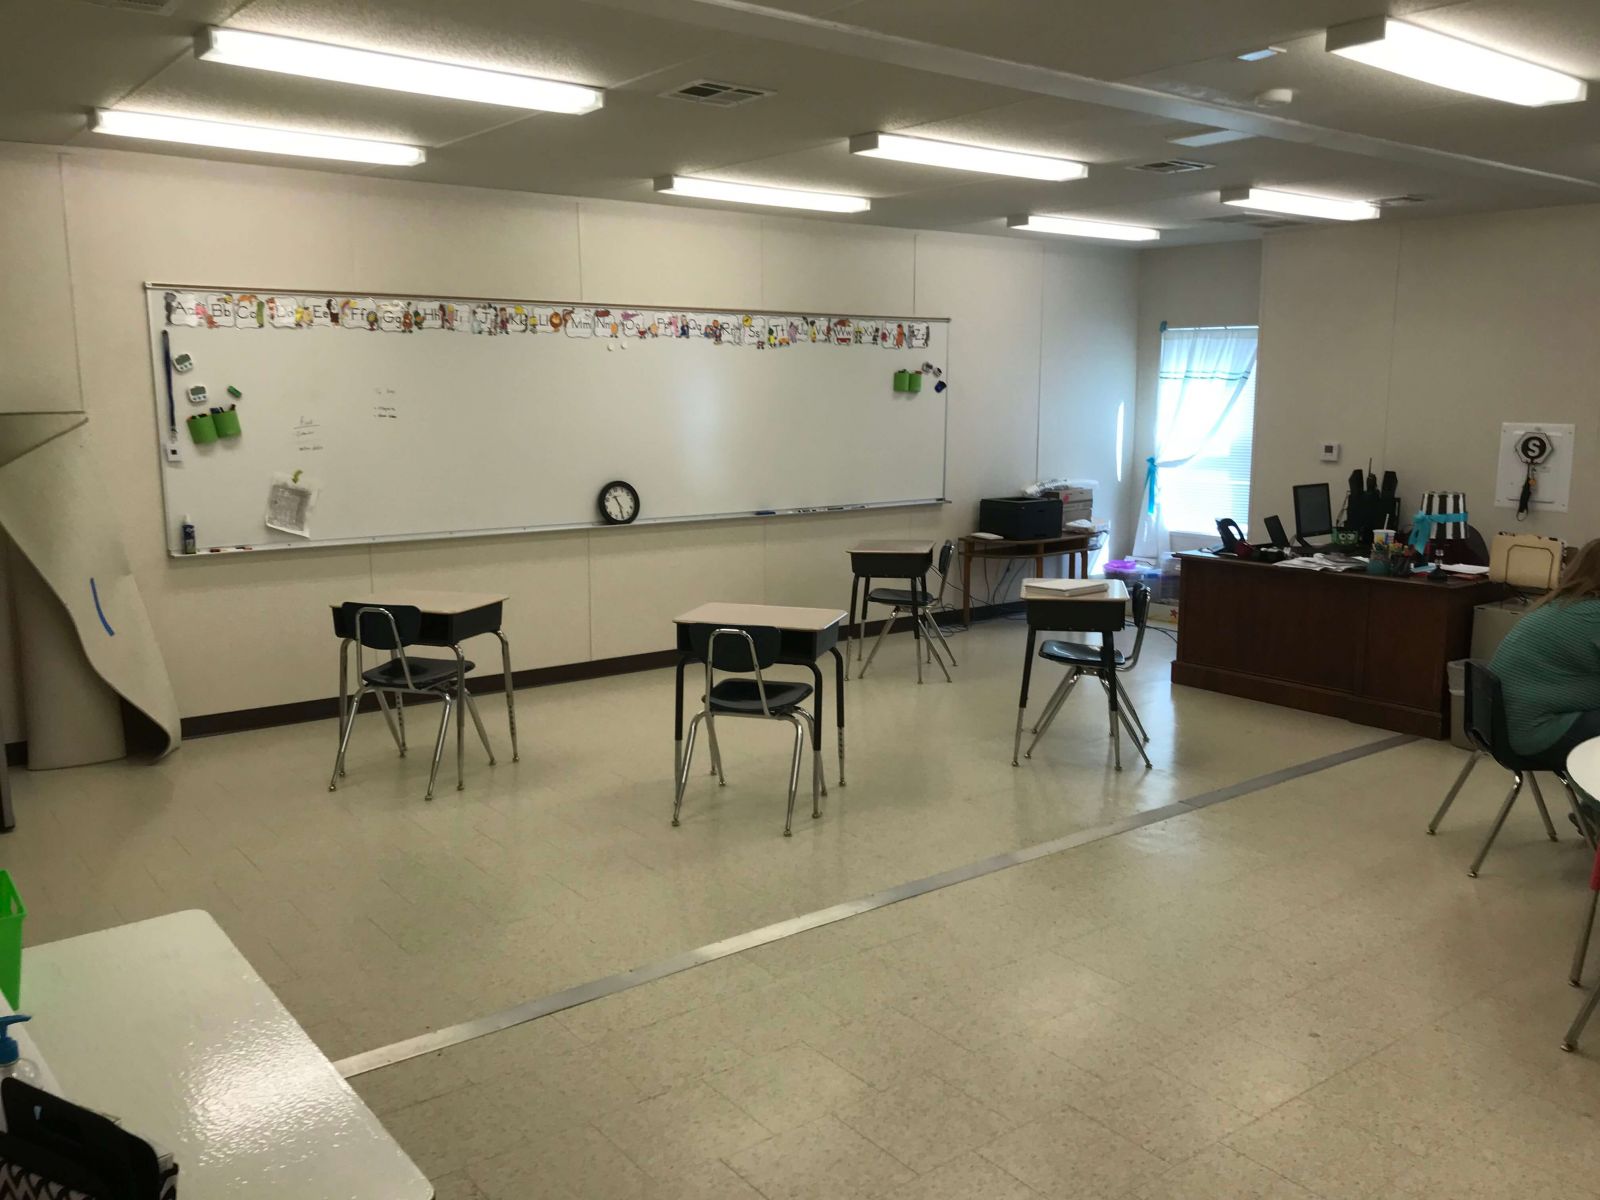 temporary-mobile-classroom-interior-4